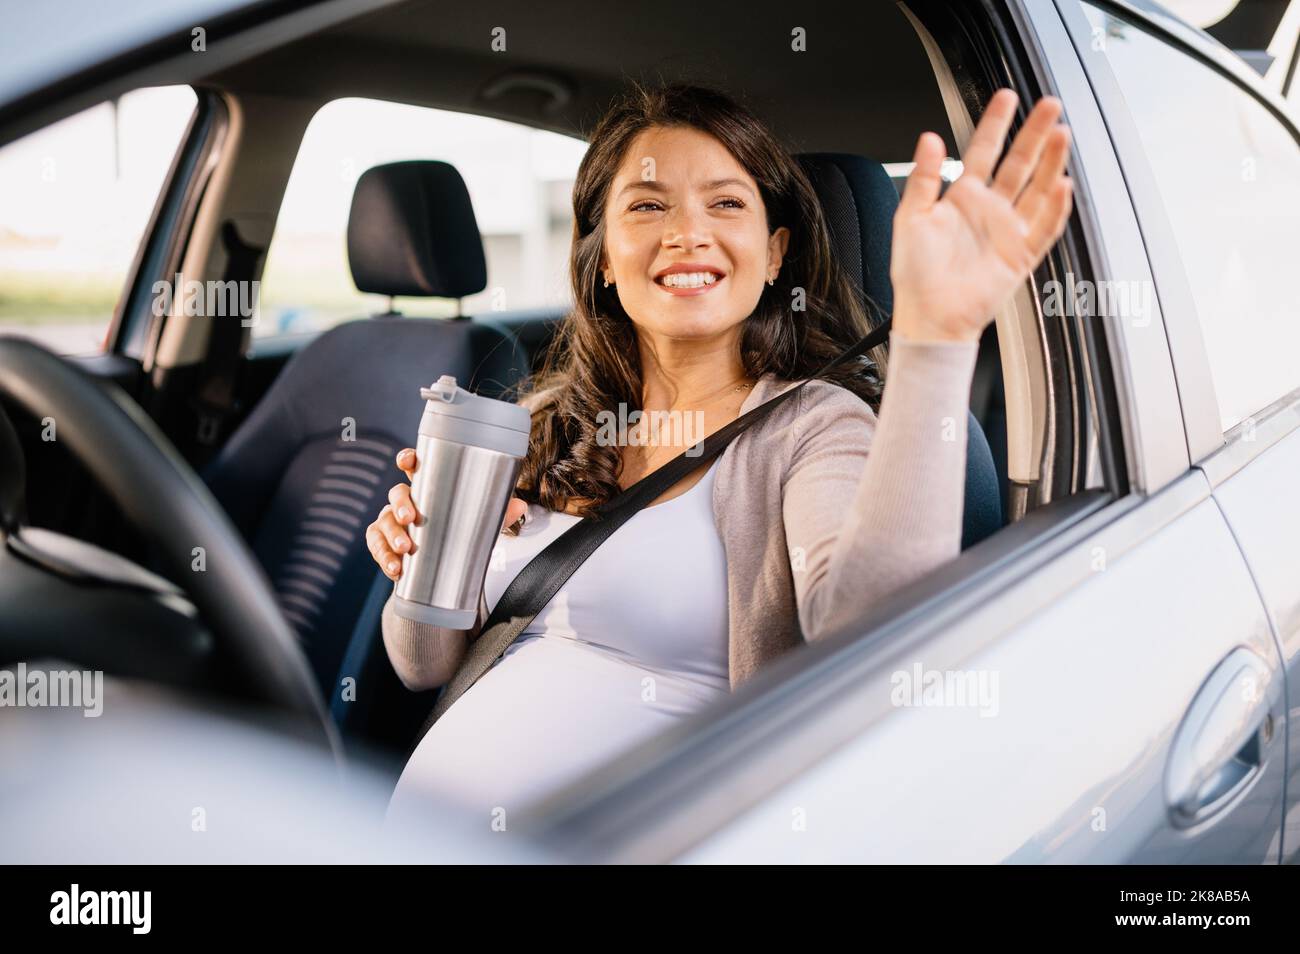 Schwanger kaukasische Frau mit glücklichen Gesicht im Auto sitzen und winken mit der Hand Stockfoto